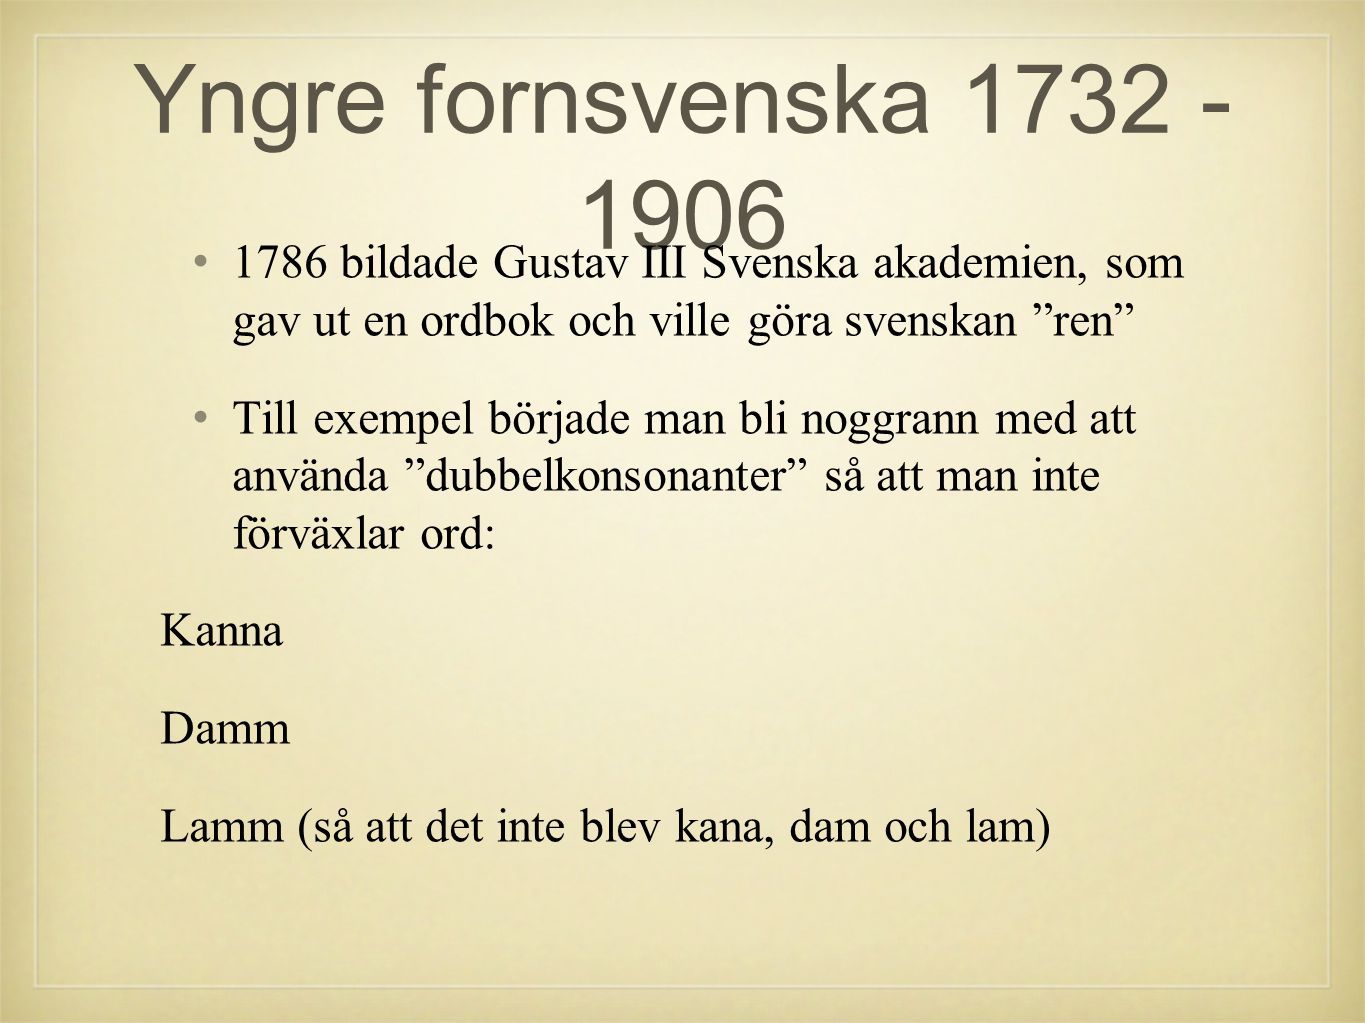 Yngre fornsvenska bildade Gustav III Svenska akademien, som gav ut en ordbok och ville göra svenskan ren